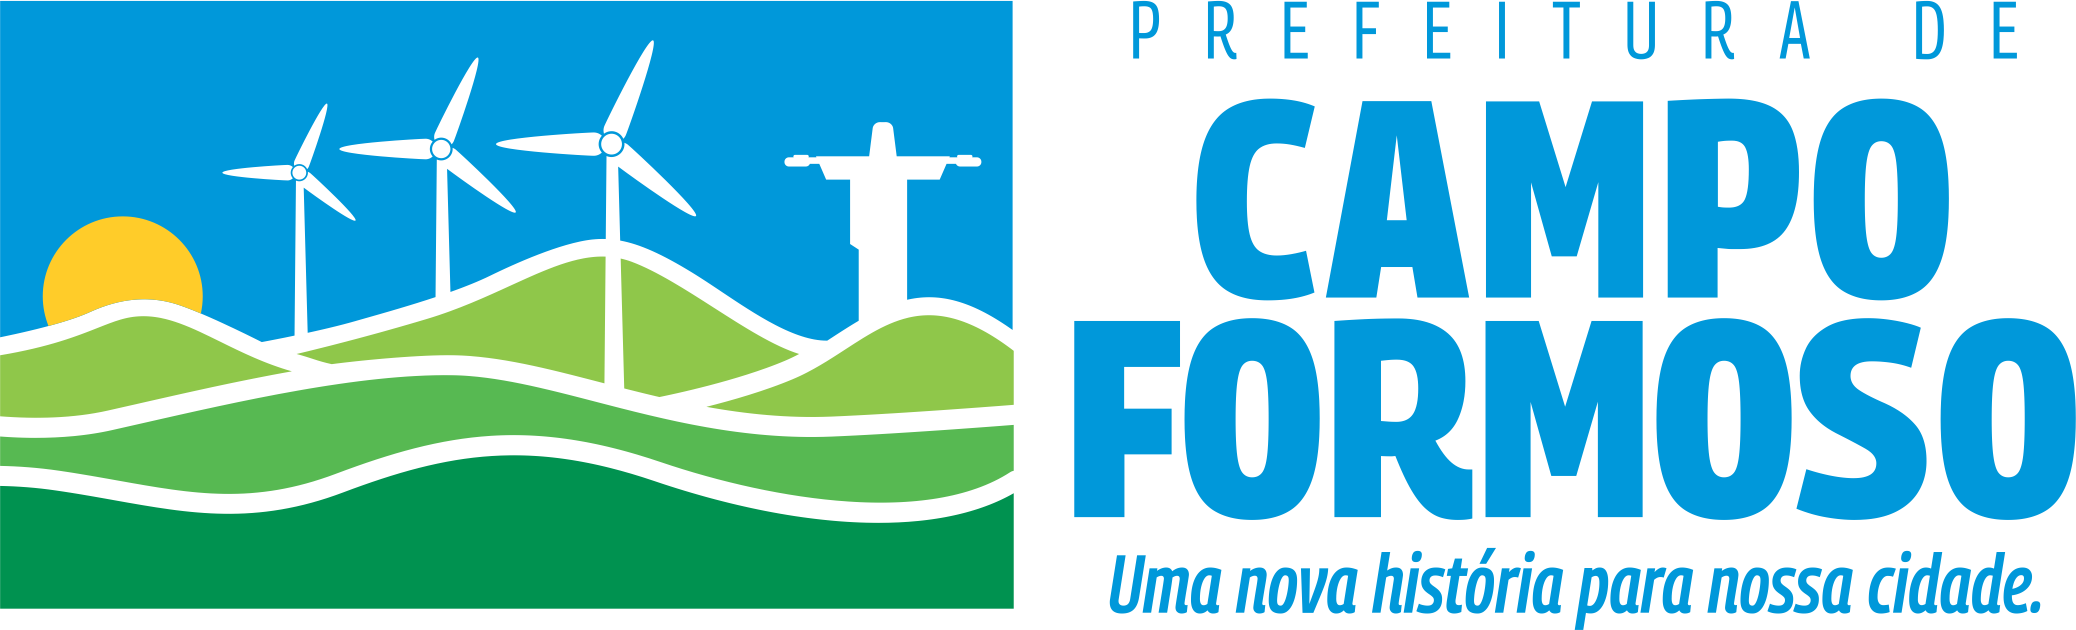 Prefeitura de Campo Formoso - Ba